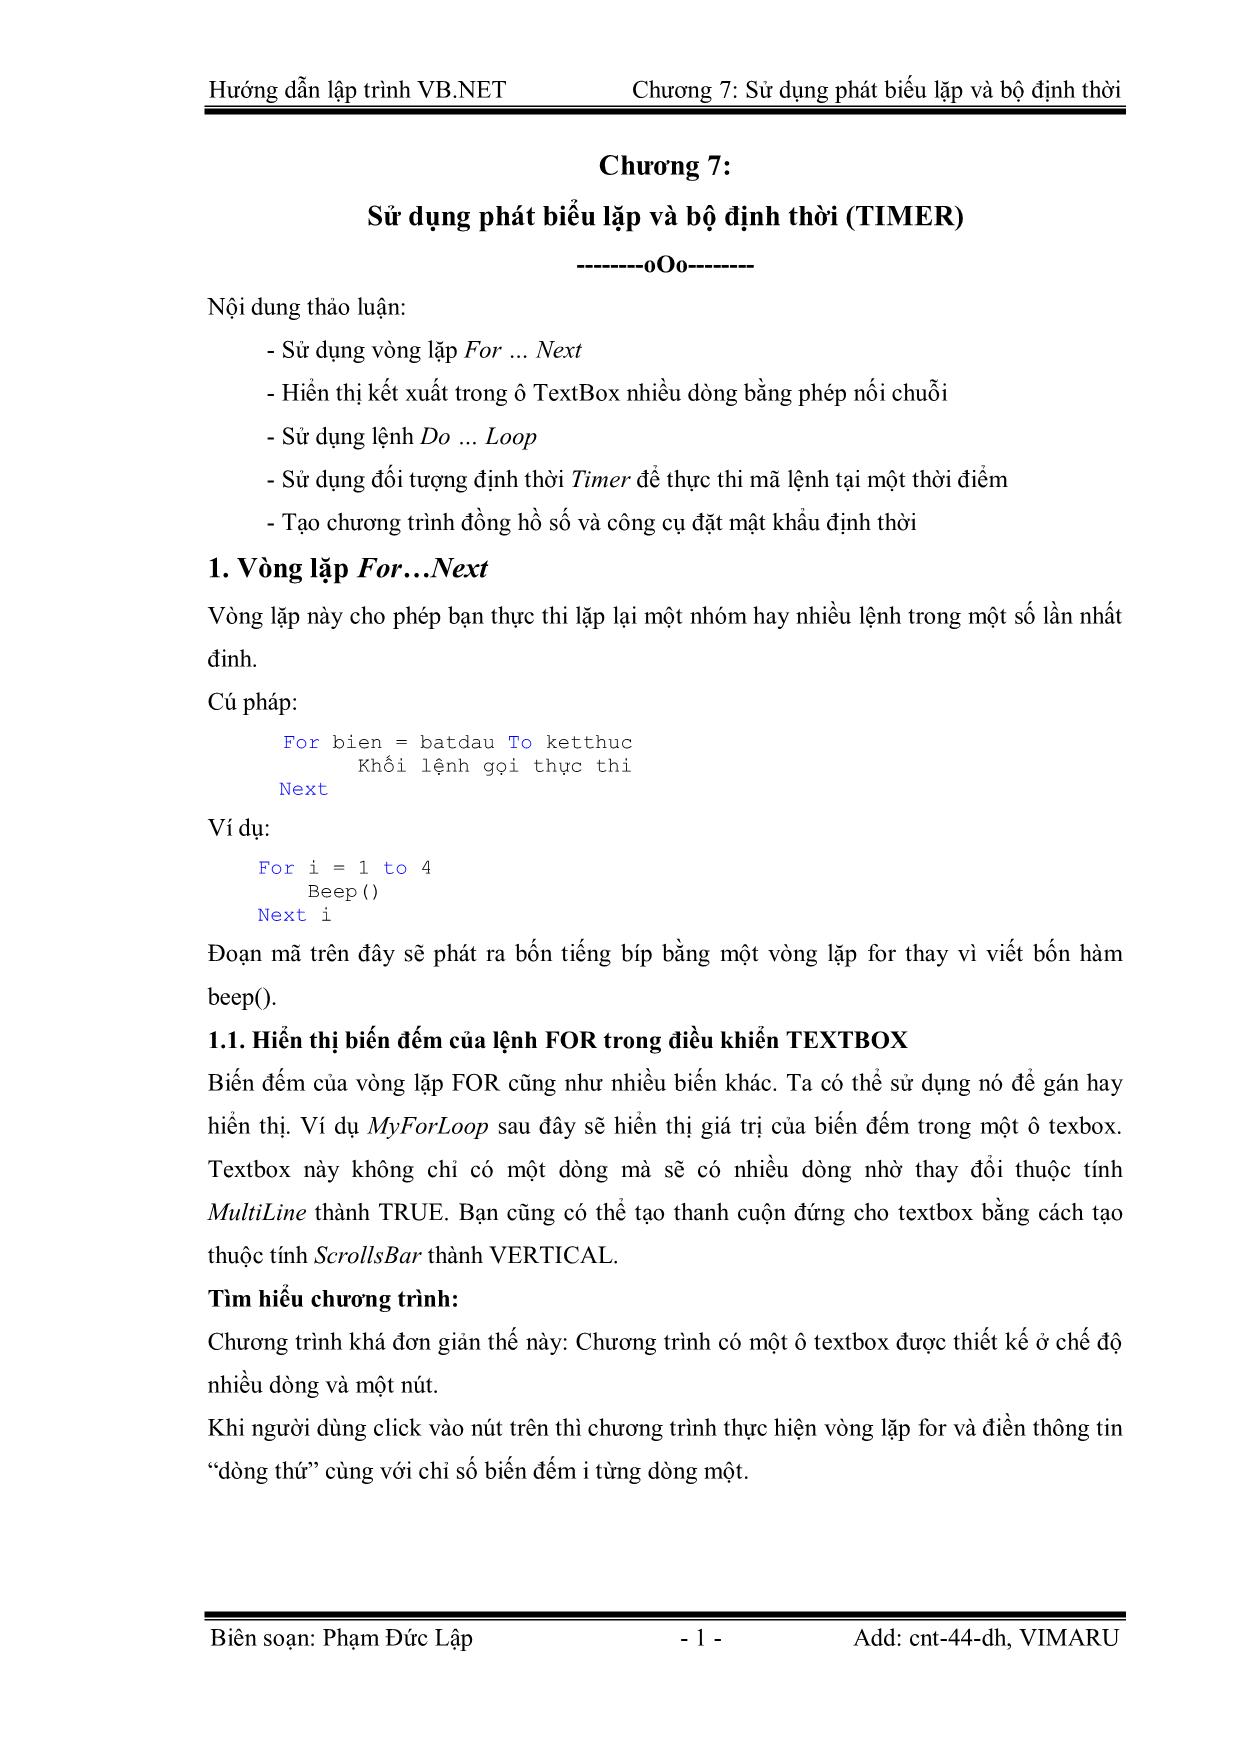 Giáo trình Hướng dẫn lập trình VB.NET - Chương 7: Sử dụng phát biểu lặp và bộ định thời - Phạm Đức Lập trang 1